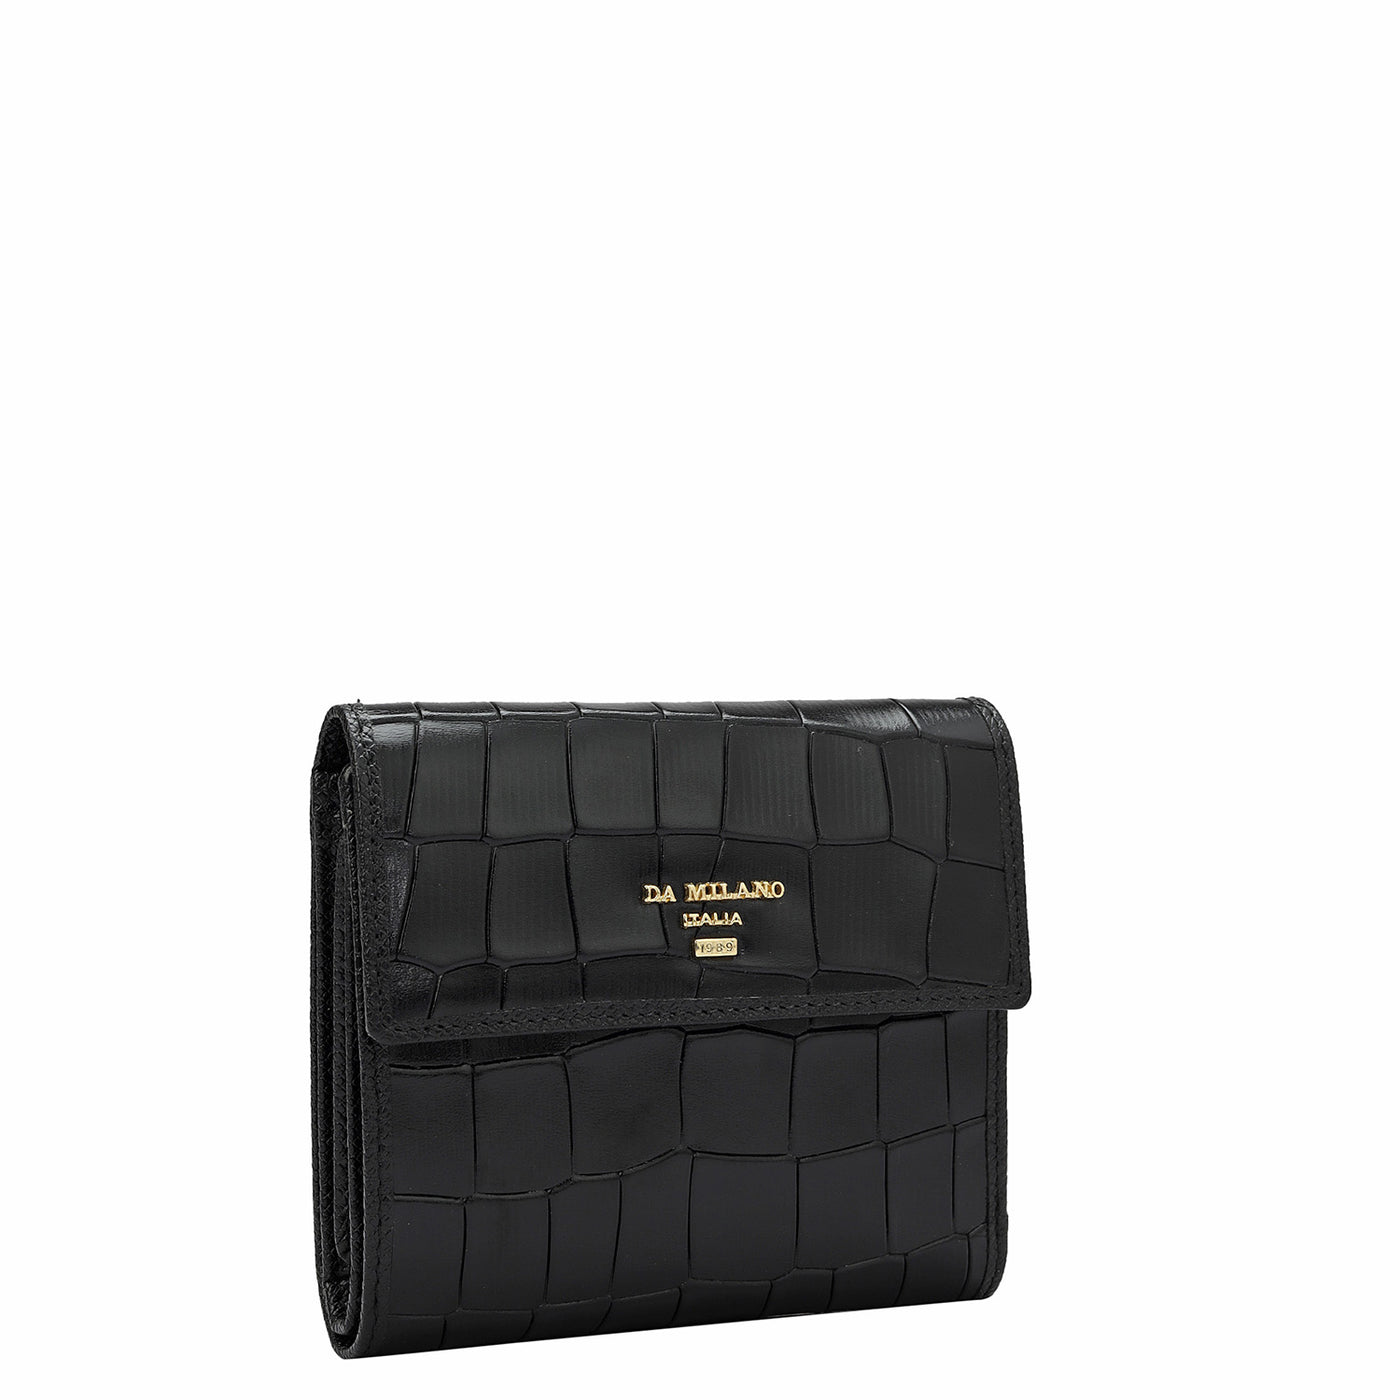 Croco Leather Ladies Wallet - Black